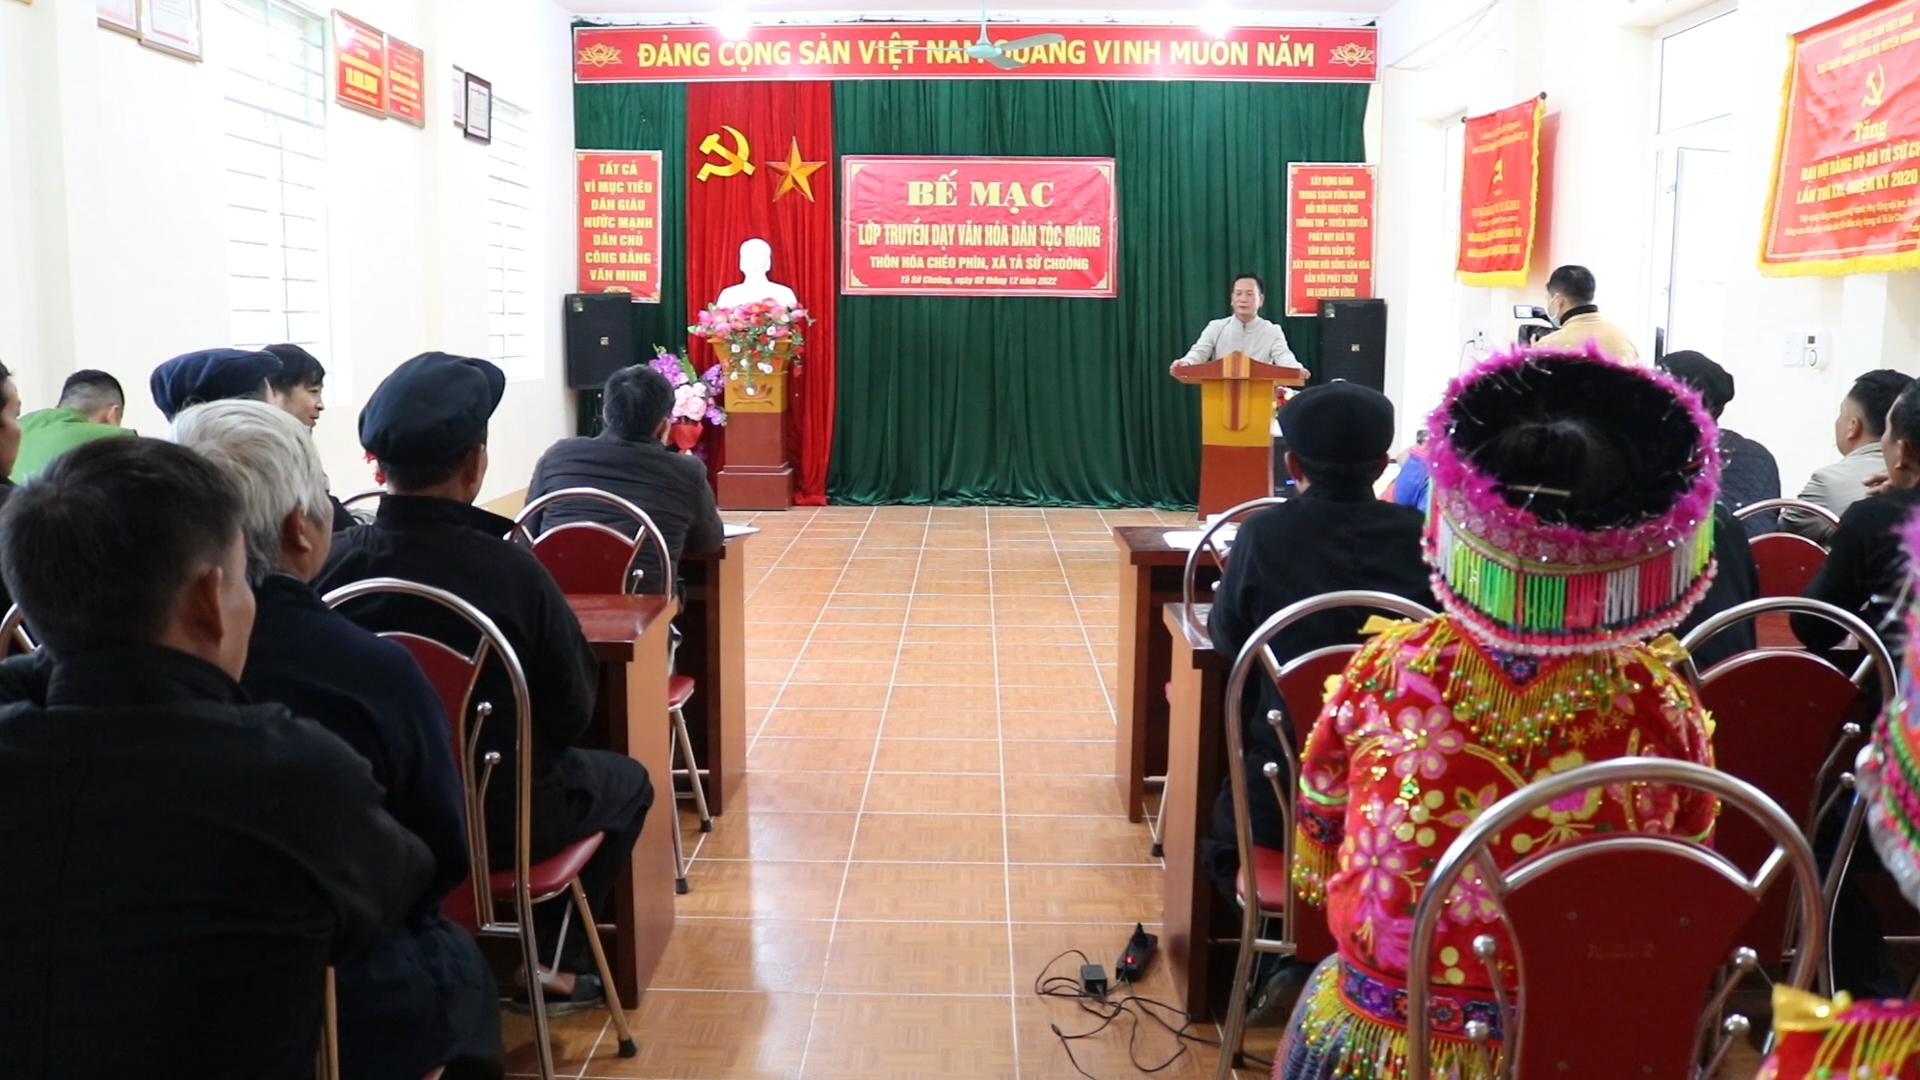 Bế mạc lớp truyền dạy văn hoá dân tộc Mông xã Tả Sử Choóng